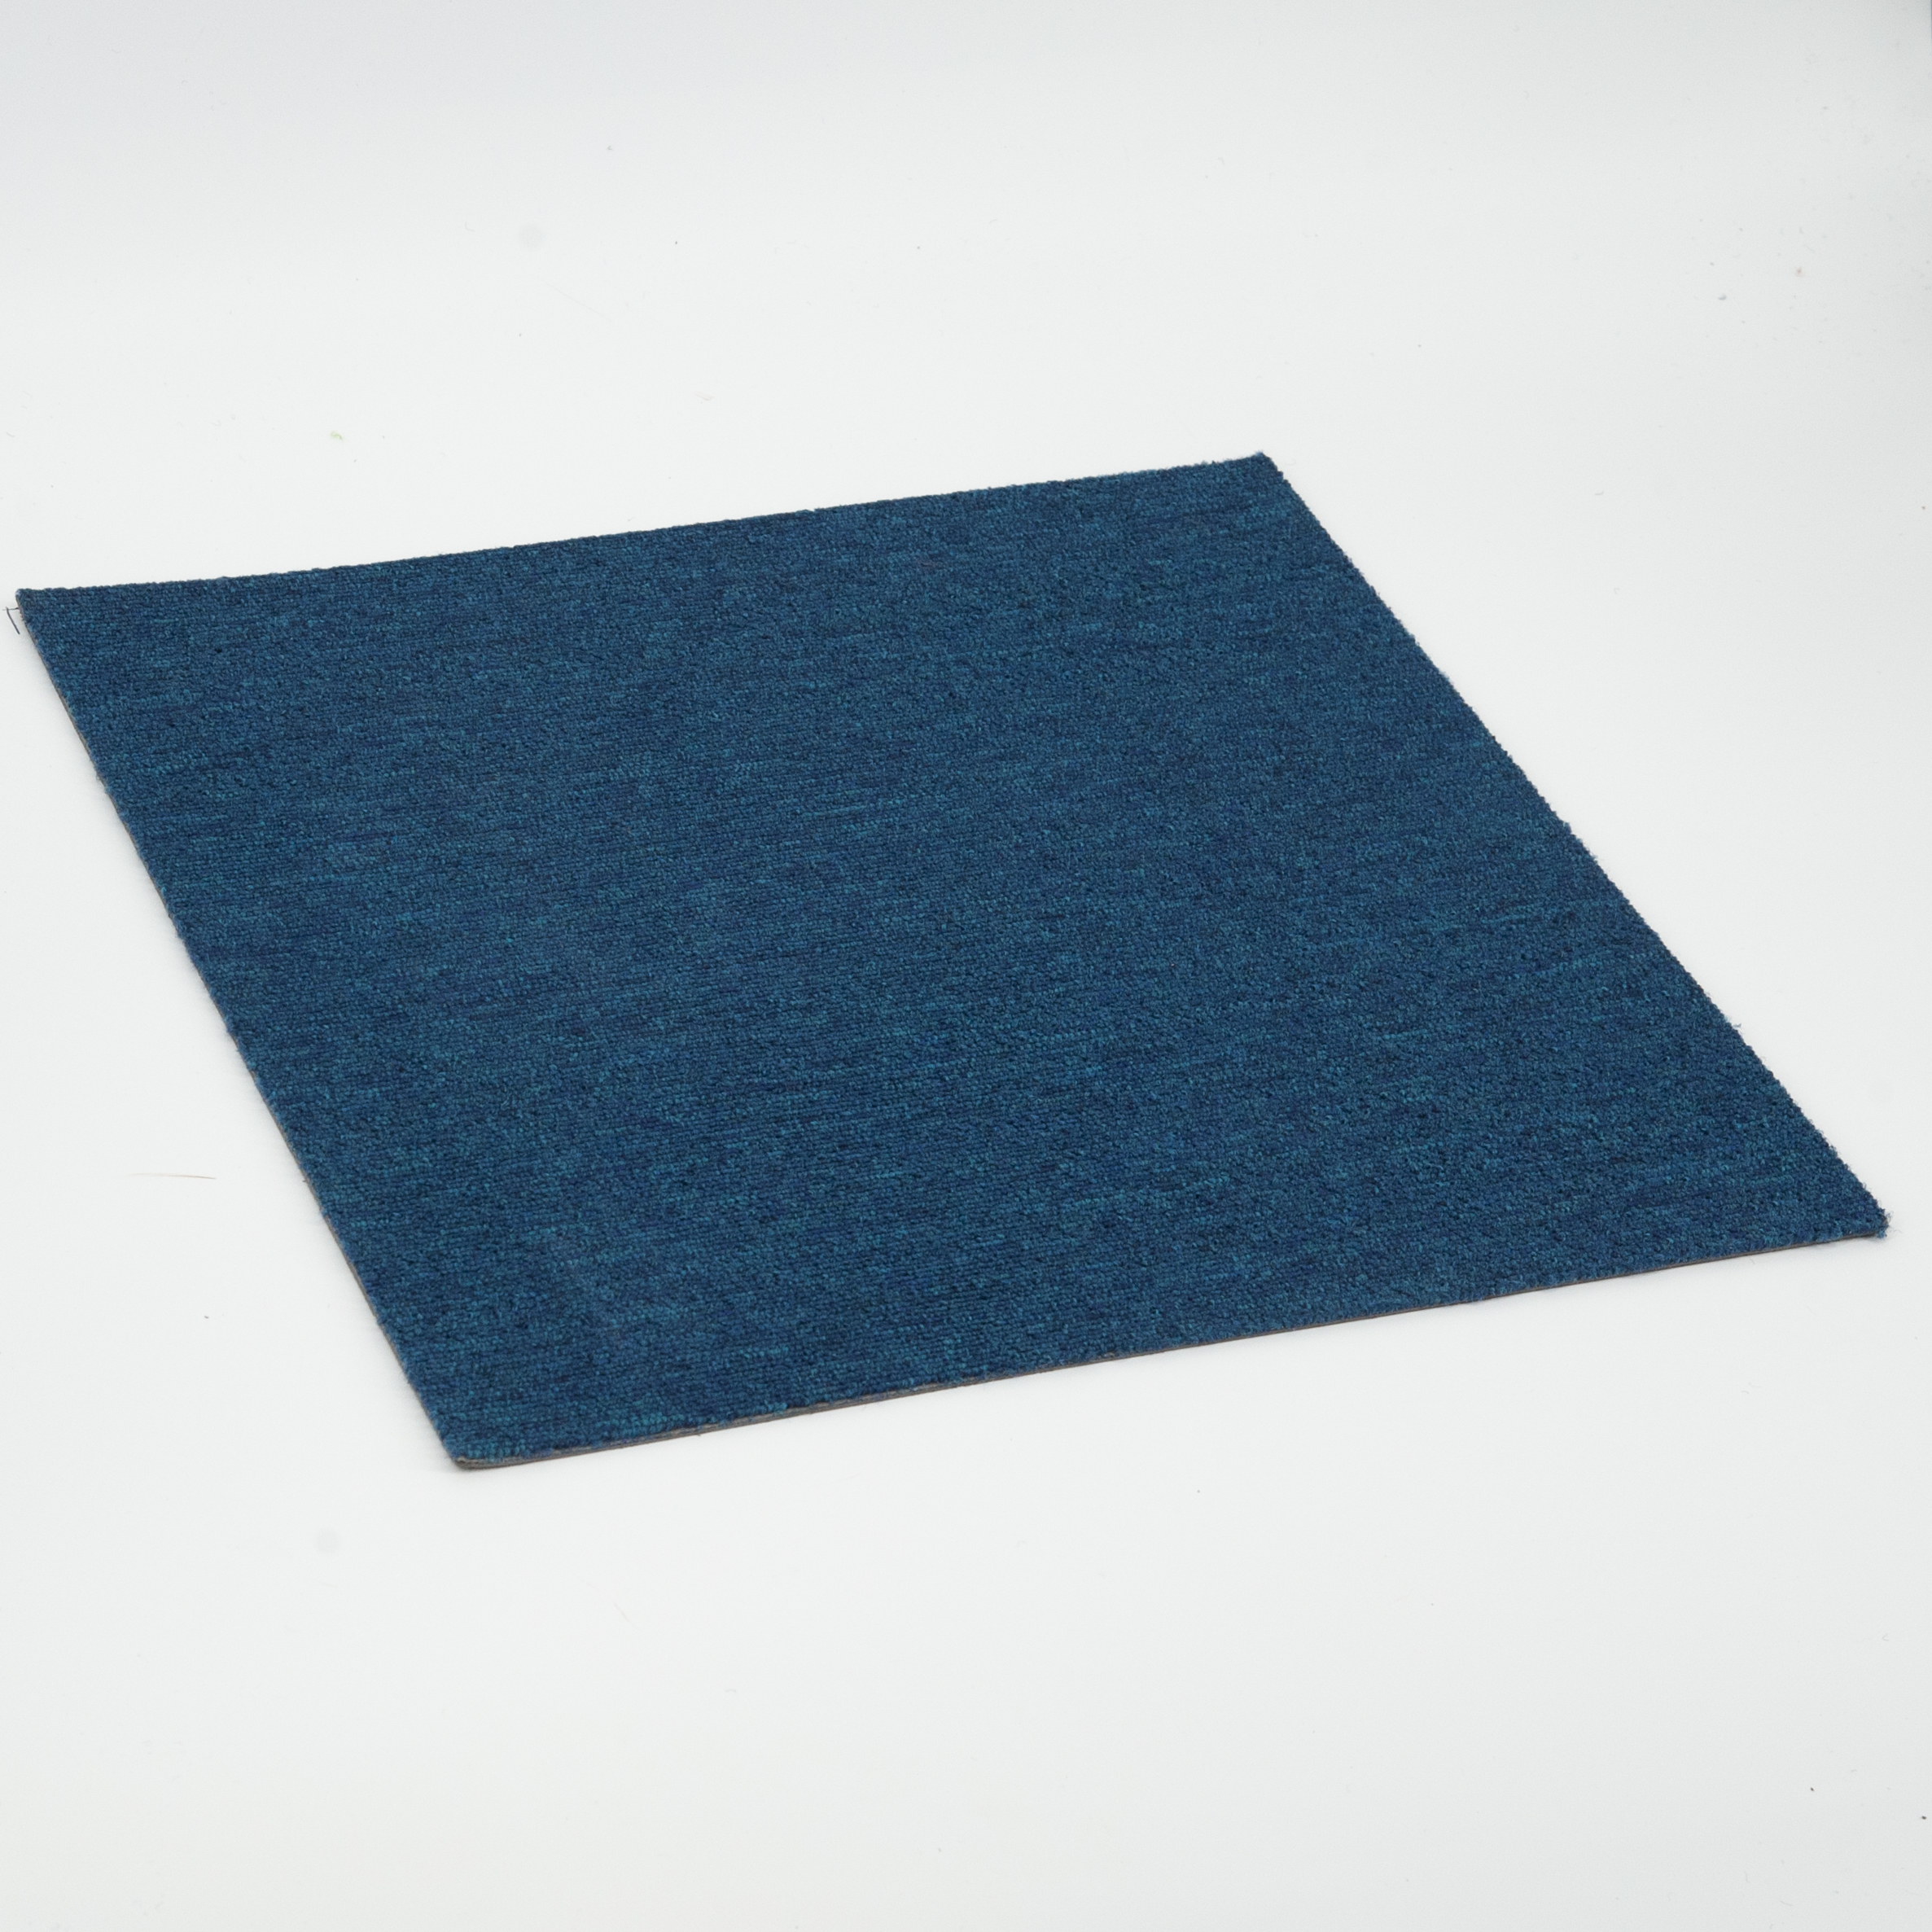 Azulejos de alfombra blanca antiestática gruesa